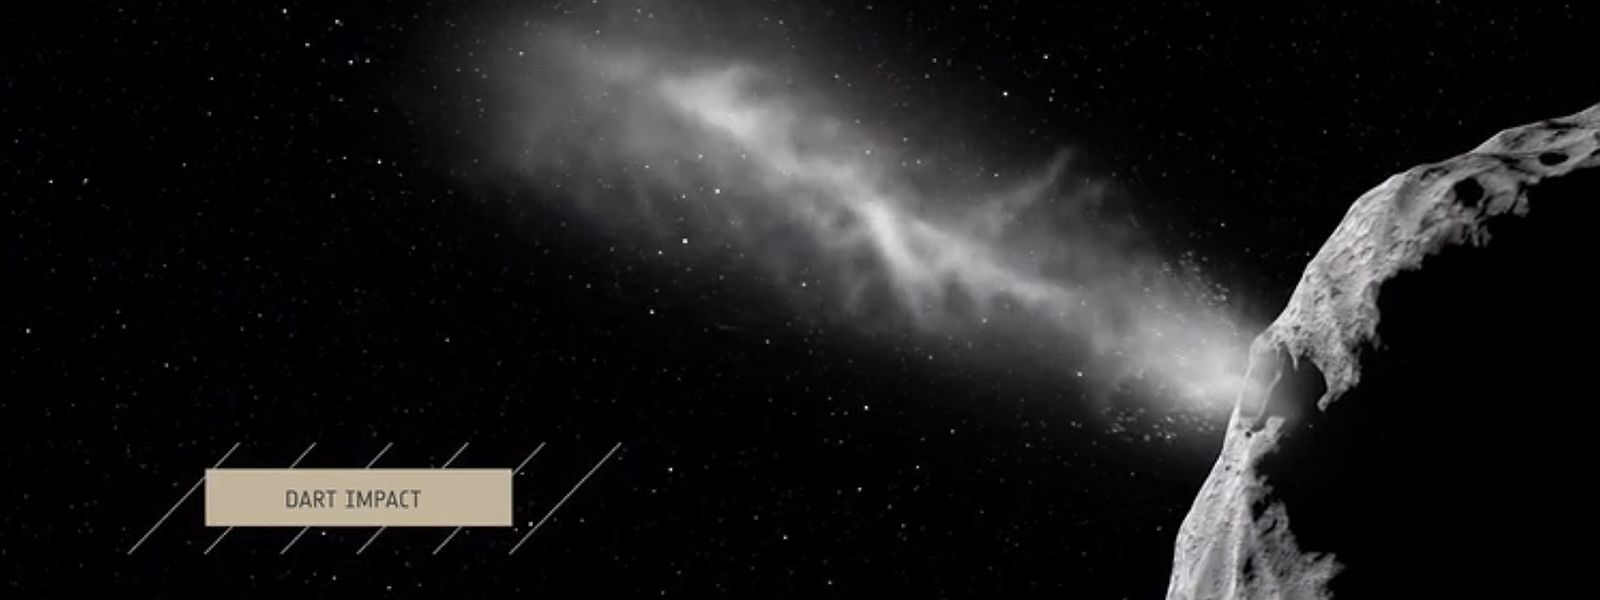 Un projet de l'ESA étudie la possibilité de catapulter un astéroïde potentiellement dangereux pour la Terre hors de sa trajectoire.